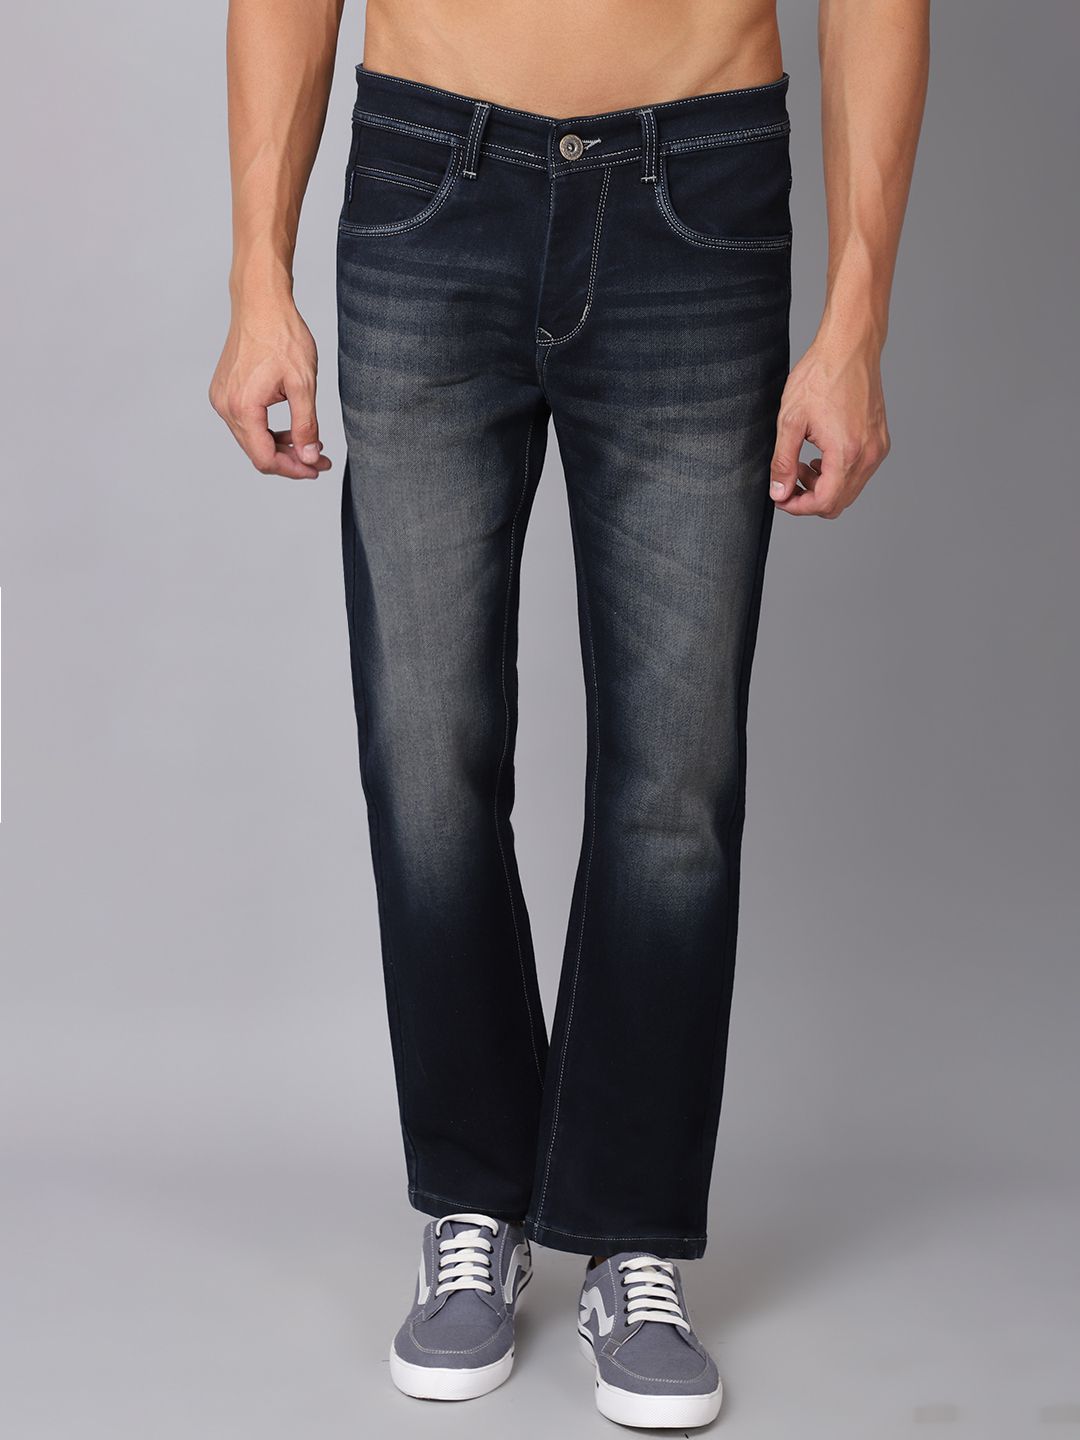     			Rodamo Slim Fit Basic Men's Jeans - Green ( Pack of 1 )